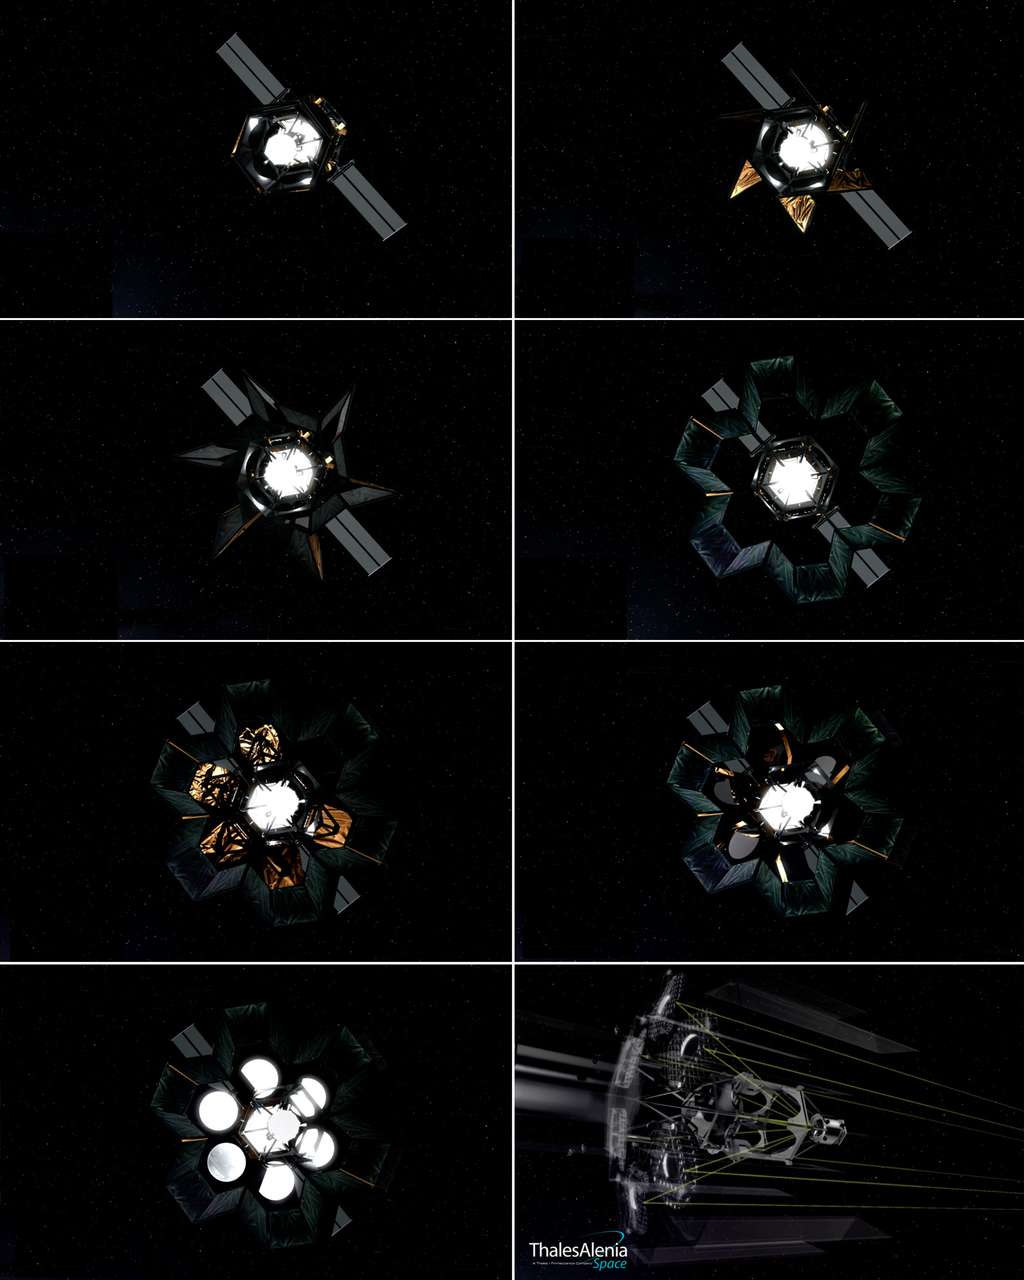 Séquence de déploiement du baffle et des miroirs du satellite Hoasis. © Thales Alenia Space